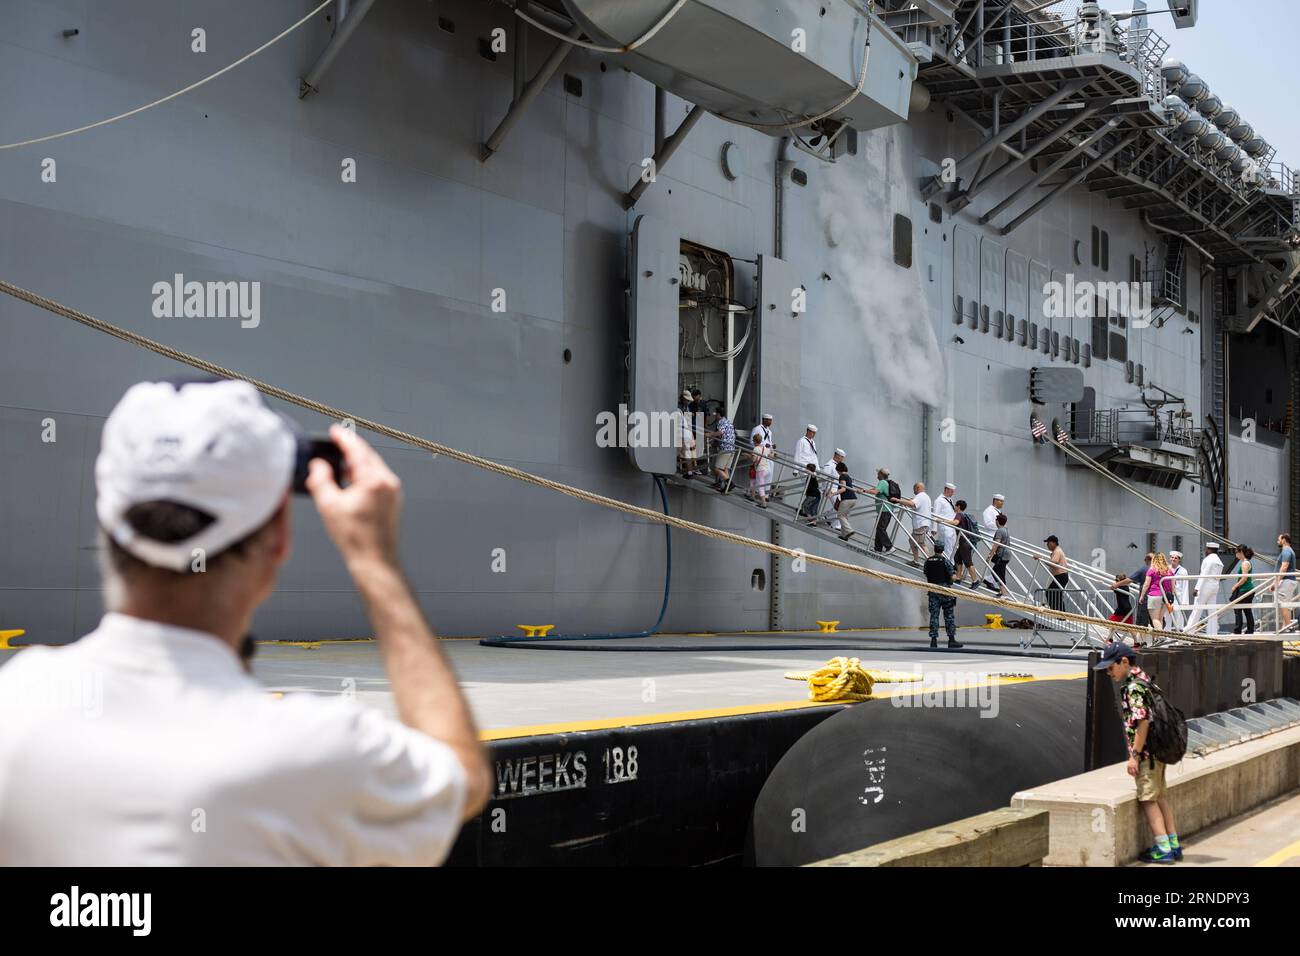 Un visitatore scatta una foto della USS Bataan (LHD-5), nave d'assalto anfibio classe Wasp, a Manhattan durante la 28a settimana annuale della flotta di New York a New York, negli Stati Uniti, il 27 maggio 2016. La New York Fleet Week si svolge dal 25 maggio al 30 maggio, dove centinaia di militari delle forze armate visitano New York City come parte delle commemorazioni del Memorial Day . SETTIMANA DELLA FLOTTA USA-NEW YORK-USS BATAAN LixMuzi PUBLICATIONxNOTxINxCHN un visitatore scatta foto della nave d'assalto anfibio classe USS Bataan LHD 5 Wasp a Manhattan durante la 28a settimana annuale della flotta di New York a New York negli Stati Uniti Foto Stock